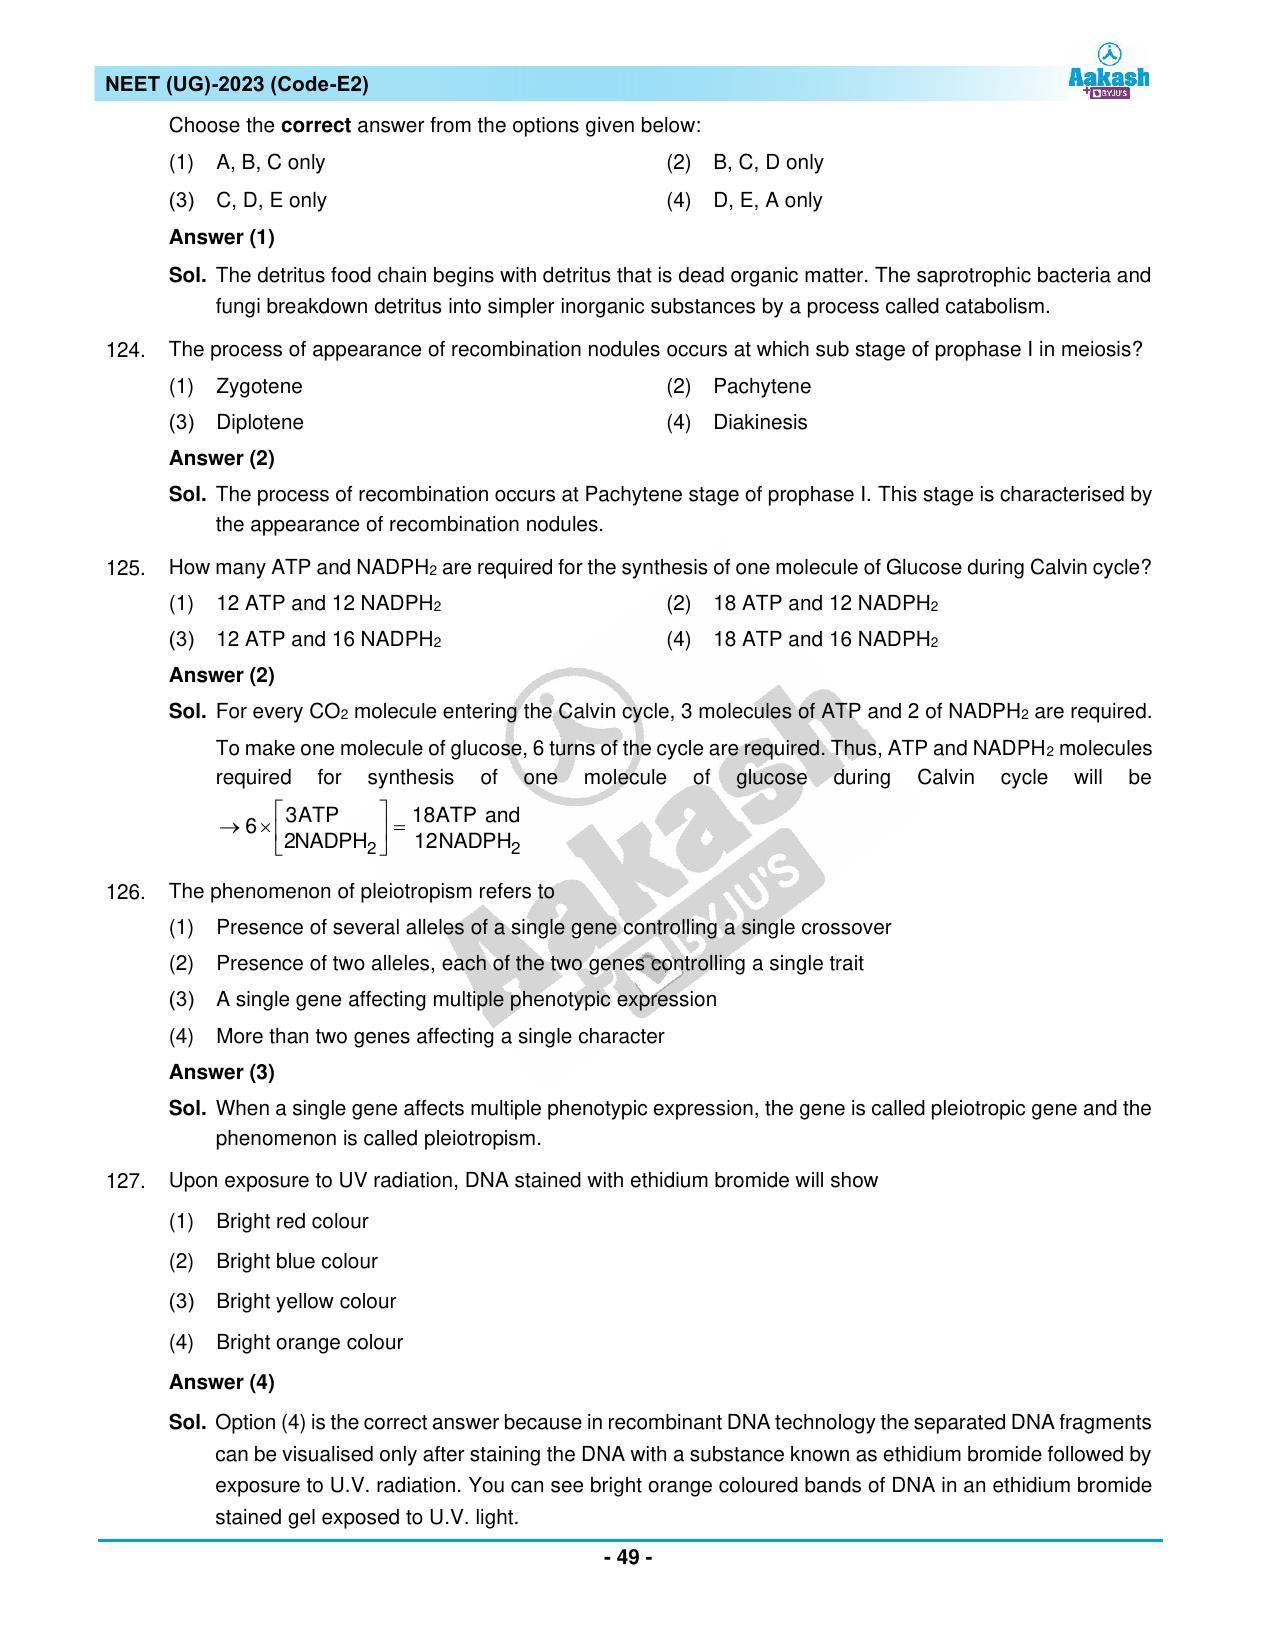 NEET 2023 Question Paper E2 - Page 49